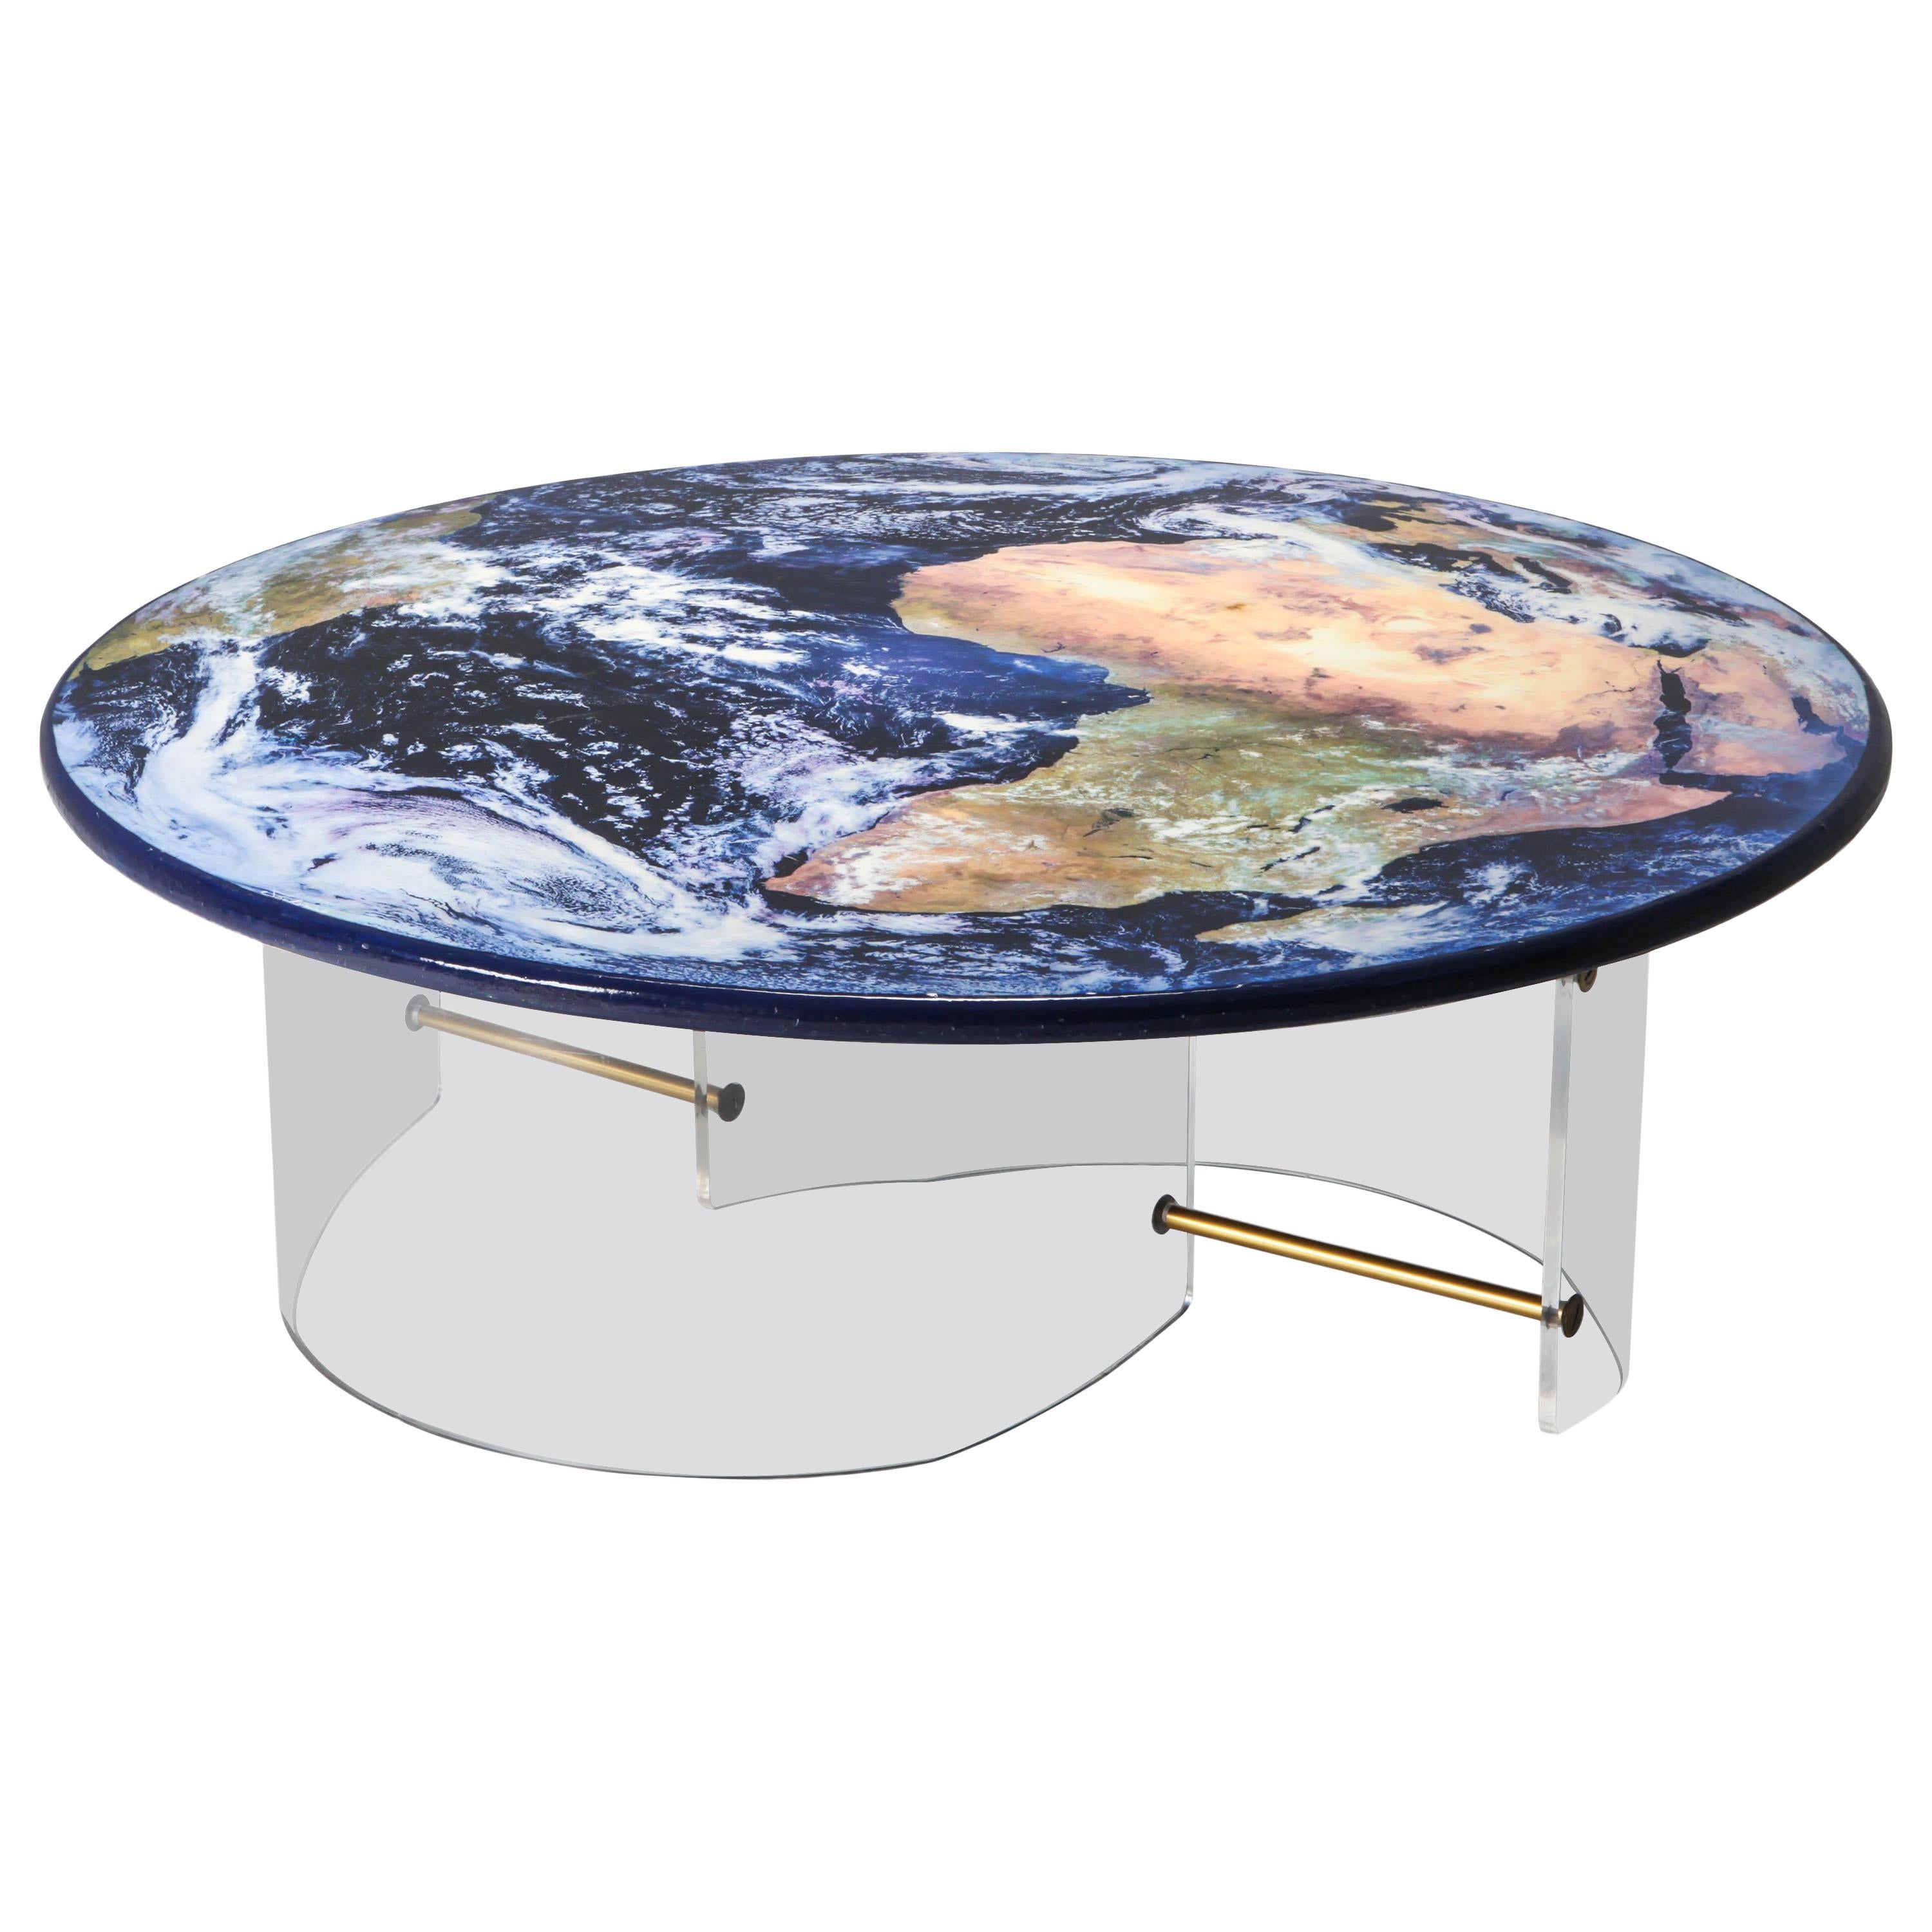 Unique Globe Table with Plexi Base